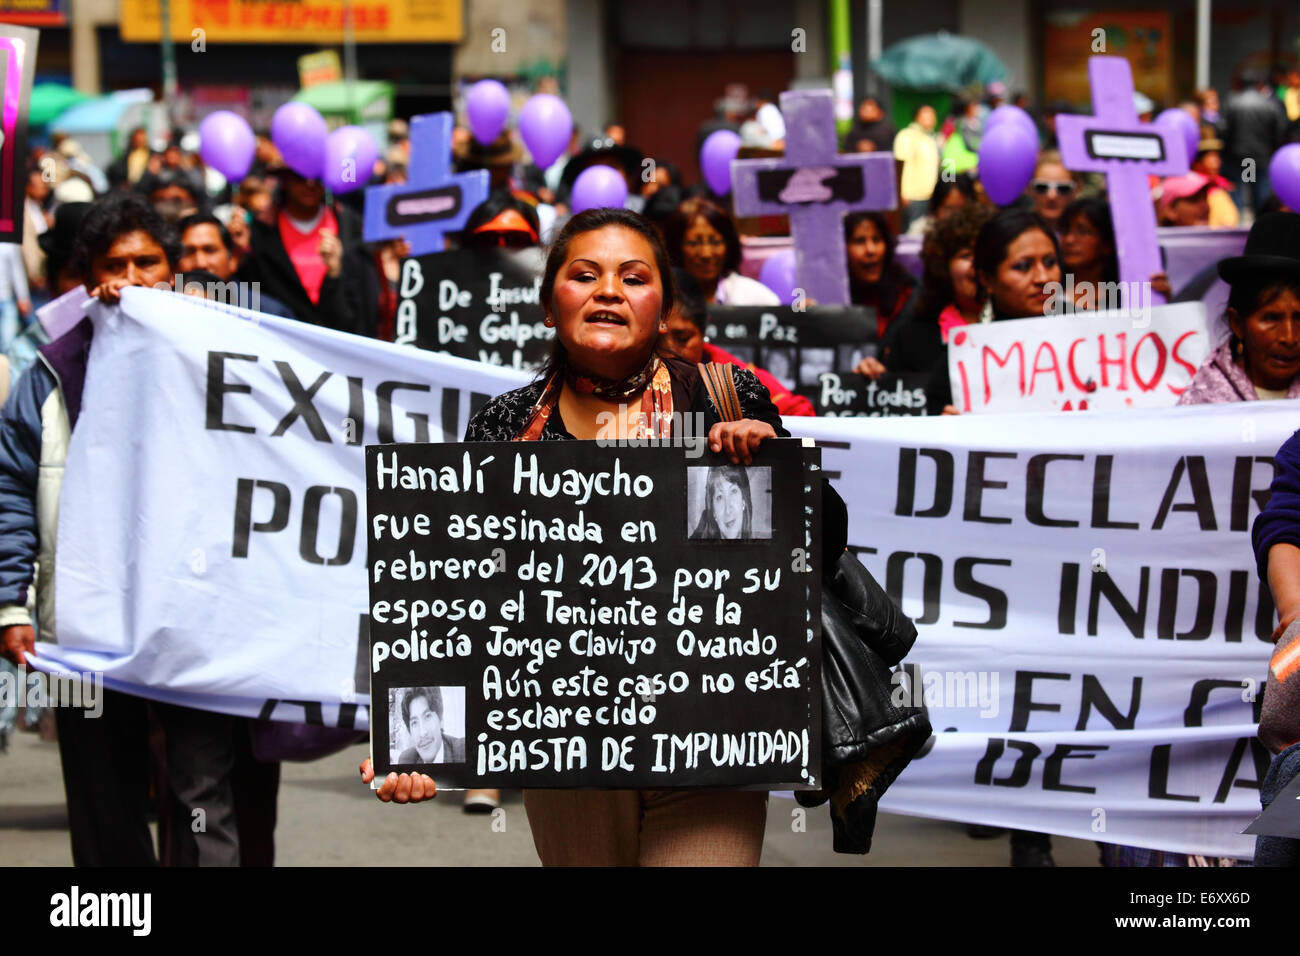 La Paz, Bolivien, 1. September 2014. Ein Aktivist von Frauenrechten trägt ein Plakat erinnern Hanali Huaycho während eines Marsches gegen Gewalt gegen Frauen zu protestieren. Der Marsch wurde auch den letzten Äußerungen von mehreren Kandidaten im aktuellen Wahlkampf, die scheinen, das Problem zu minimieren und diskriminieren Frauen ablehnen. Laut einem Bericht der WHO im Januar 2013 Bolivien ist das Land mit der höchsten Rate der Gewalt gegen Frauen in Lateinamerika, wurden seit 2006 453 Fälle von Frauenmorde in der aktuellen Regierung. Bildnachweis: James Brunker/Alamy Live-Nachrichten Stockfoto